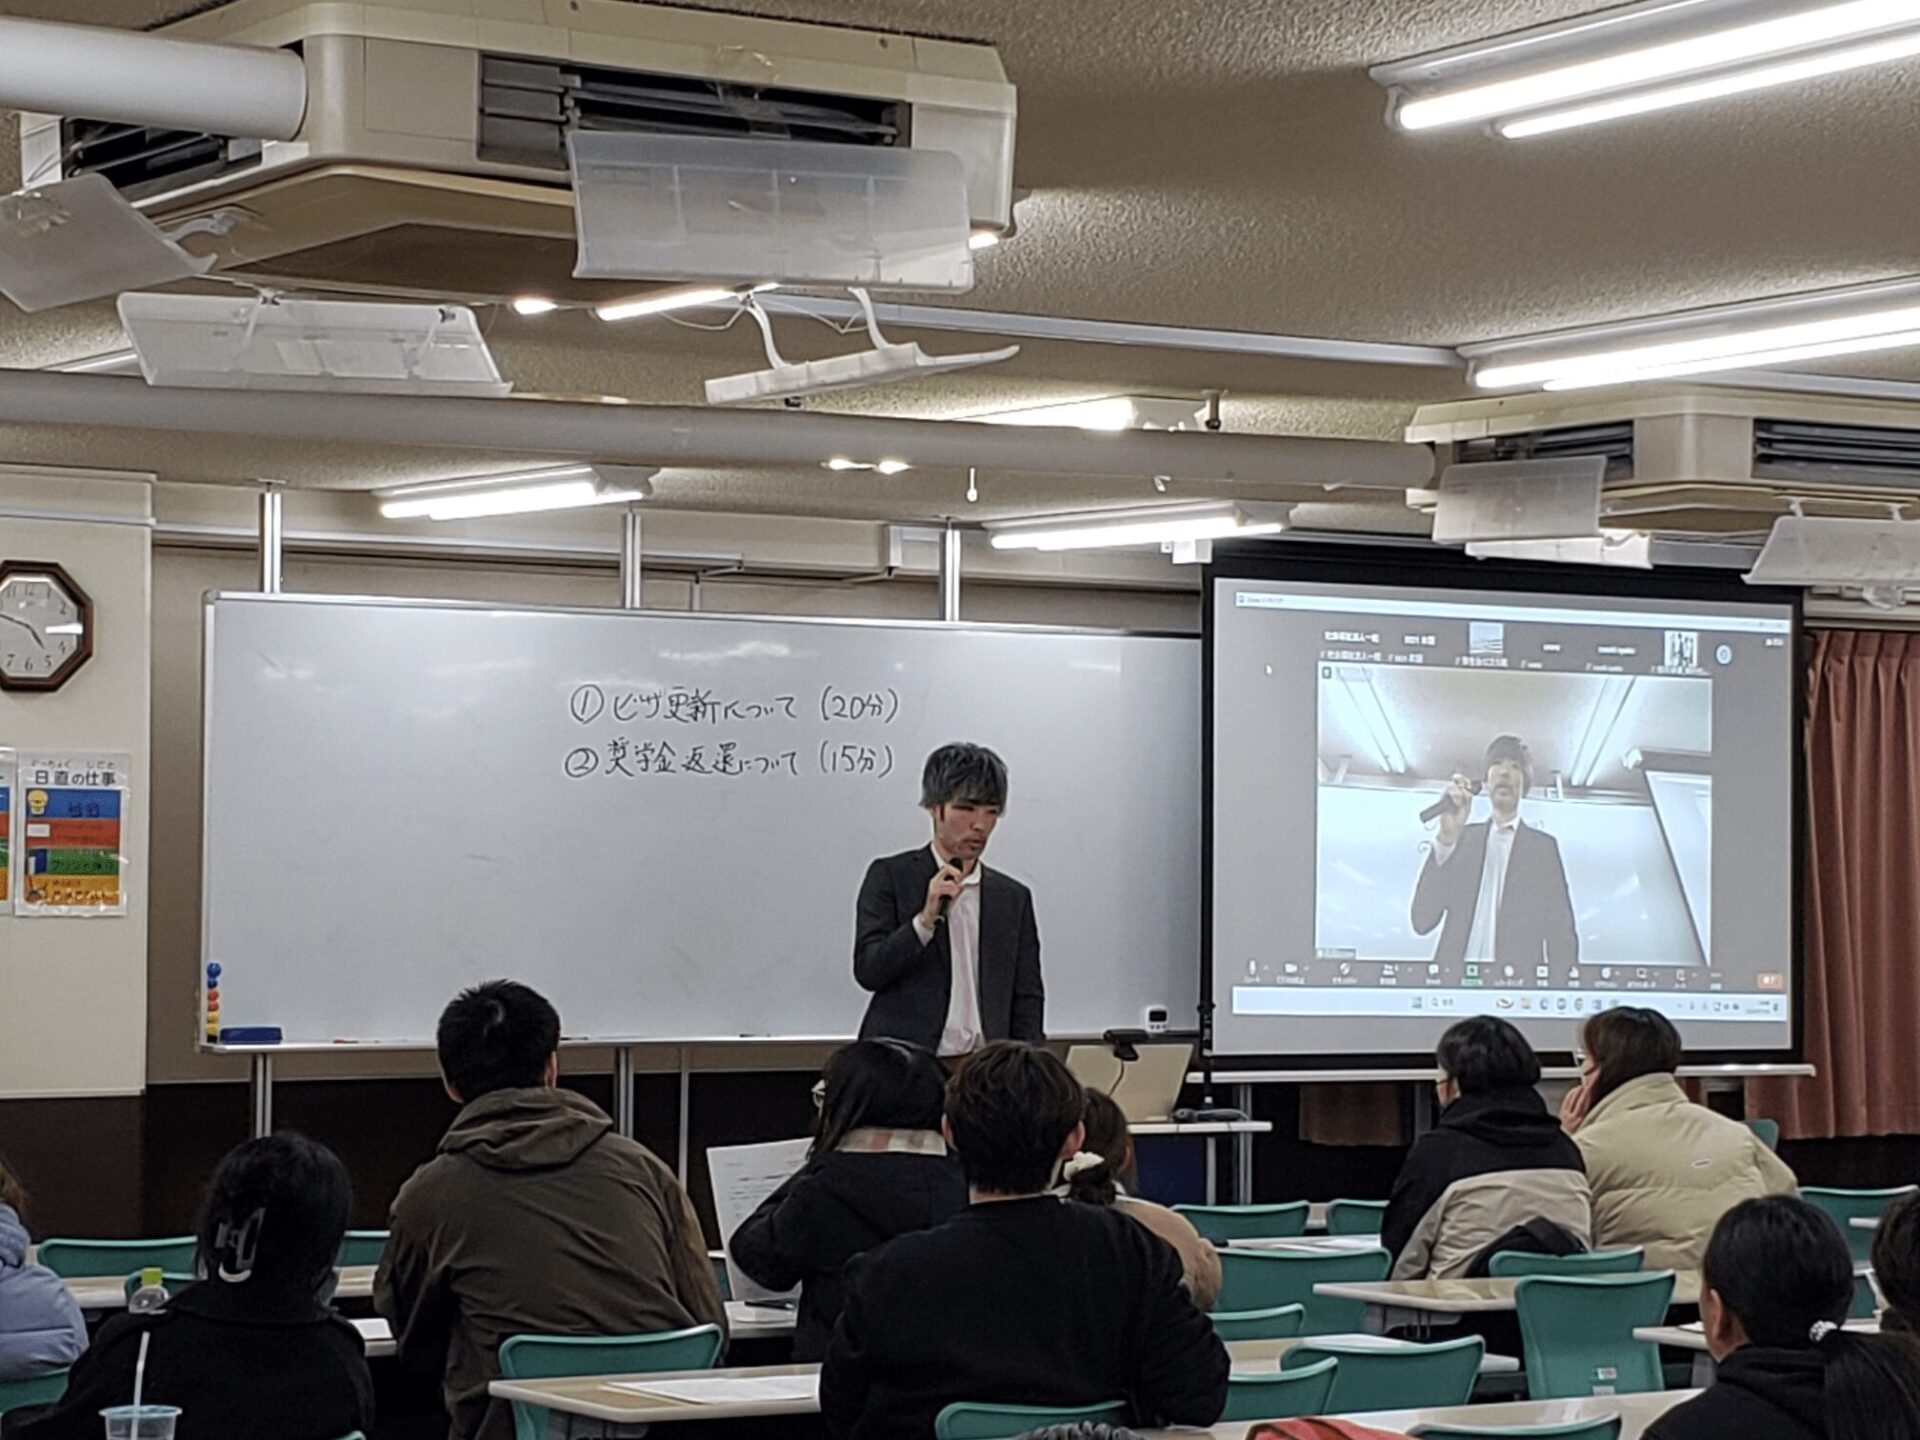 日本福祉教育専門学校様で卒業する留学生向けに説明会を実施しました